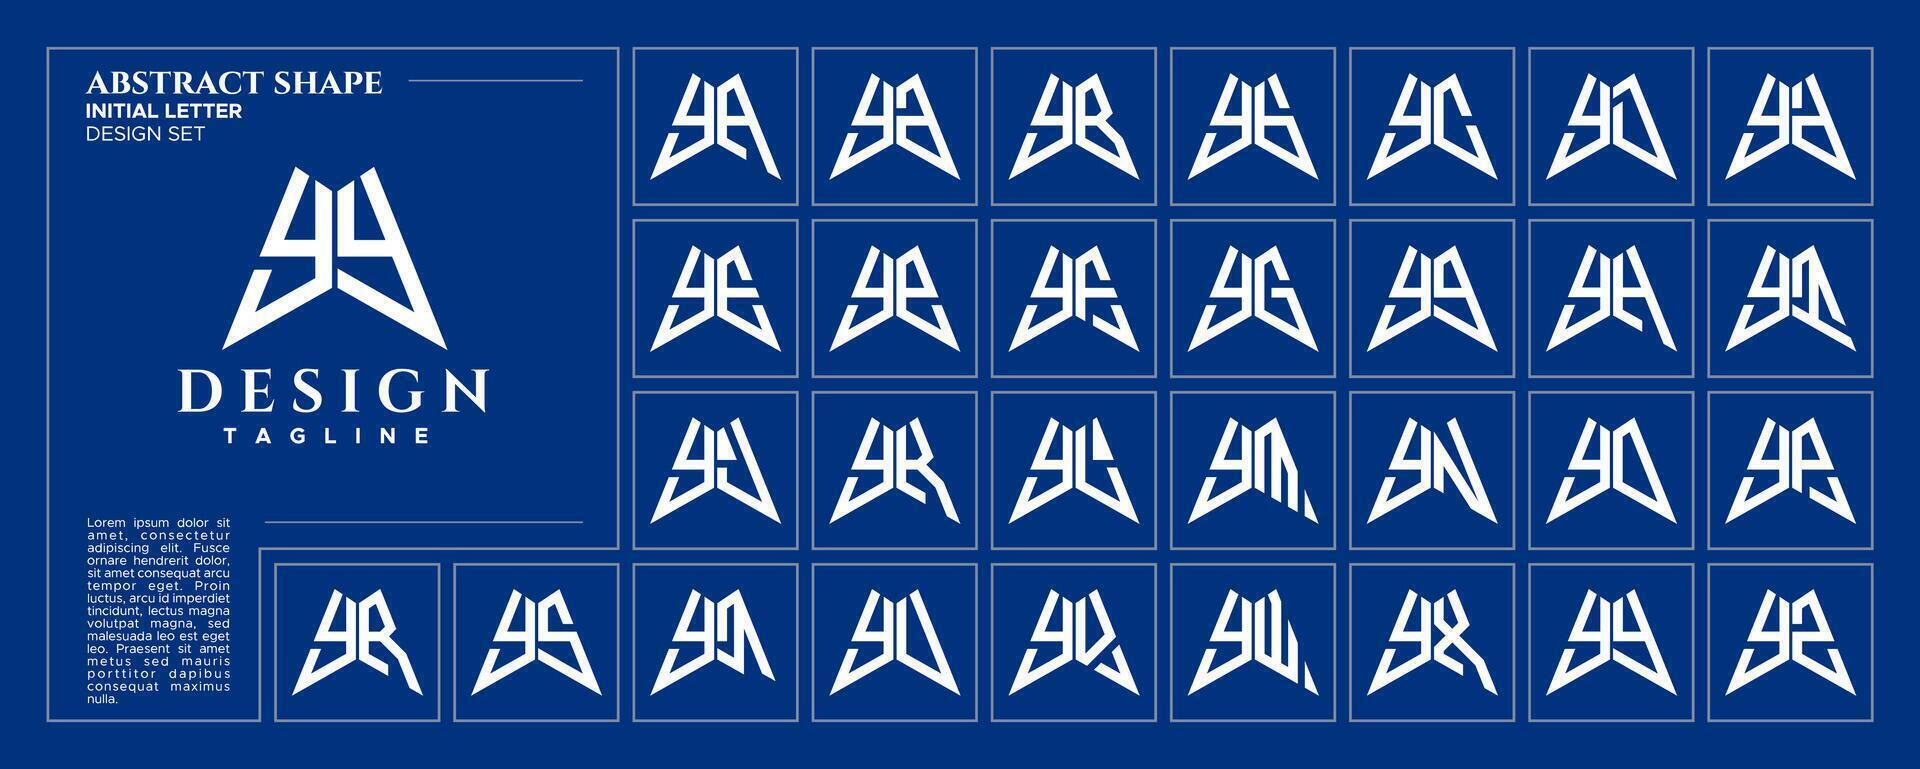 moderno abstrato inicial carta y yy logotipo Projeto agrupar vetor